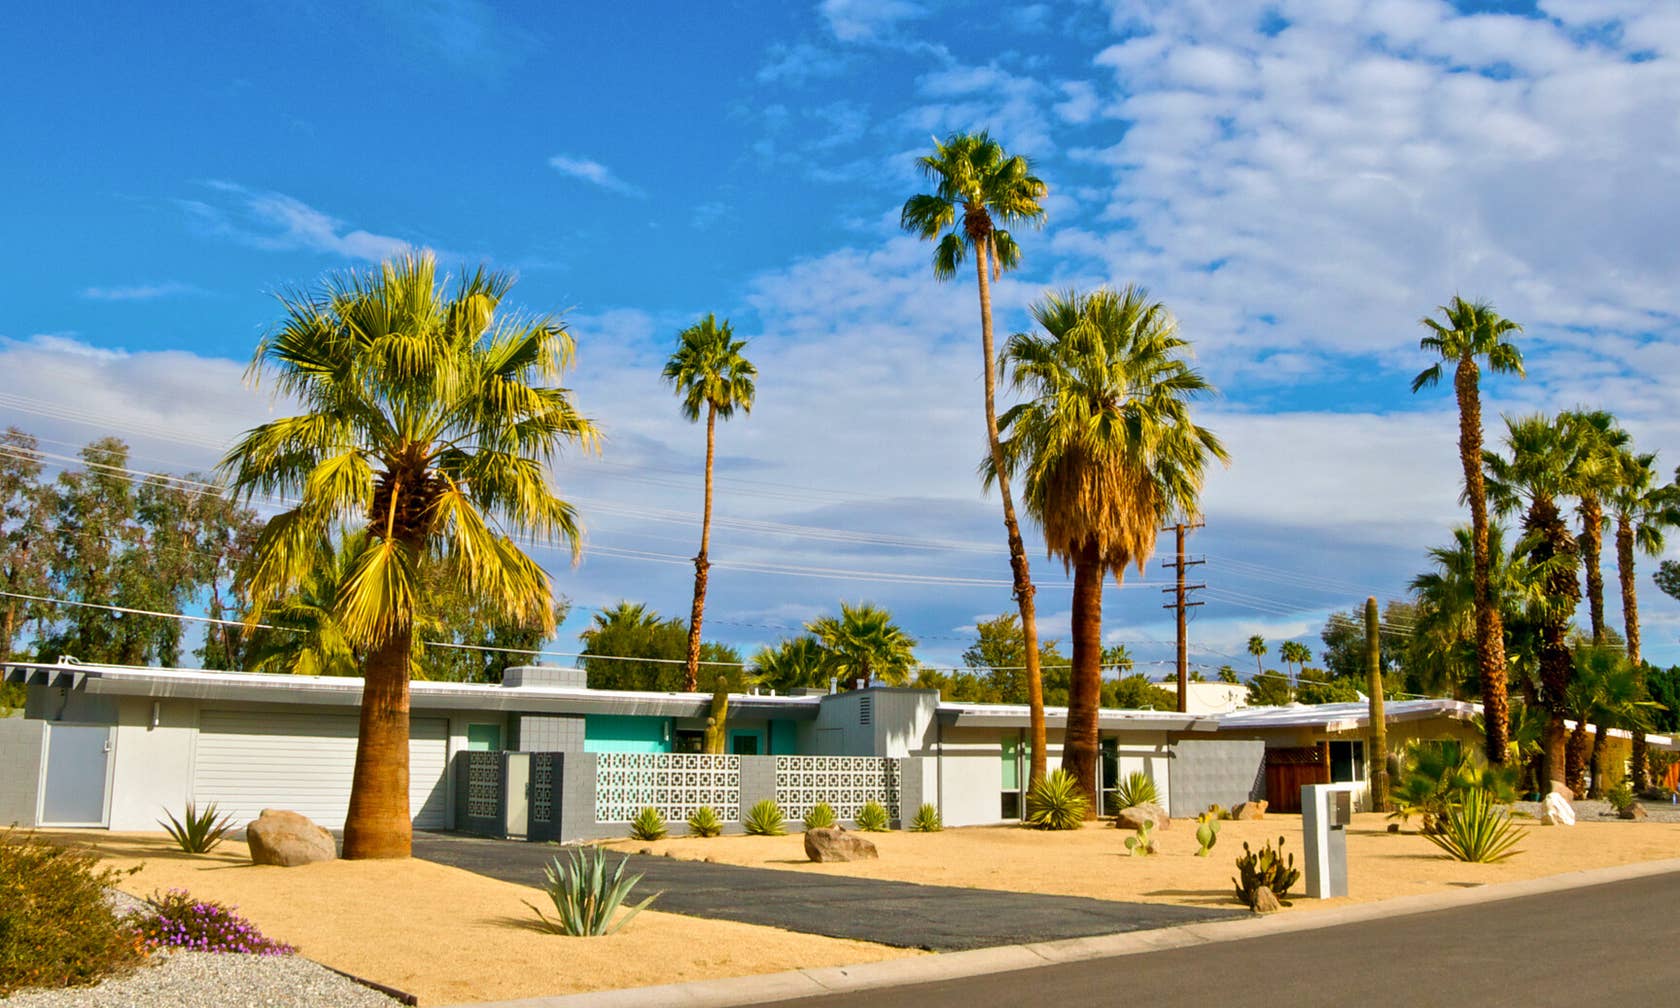 Vakantieverhuur in Palm Springs